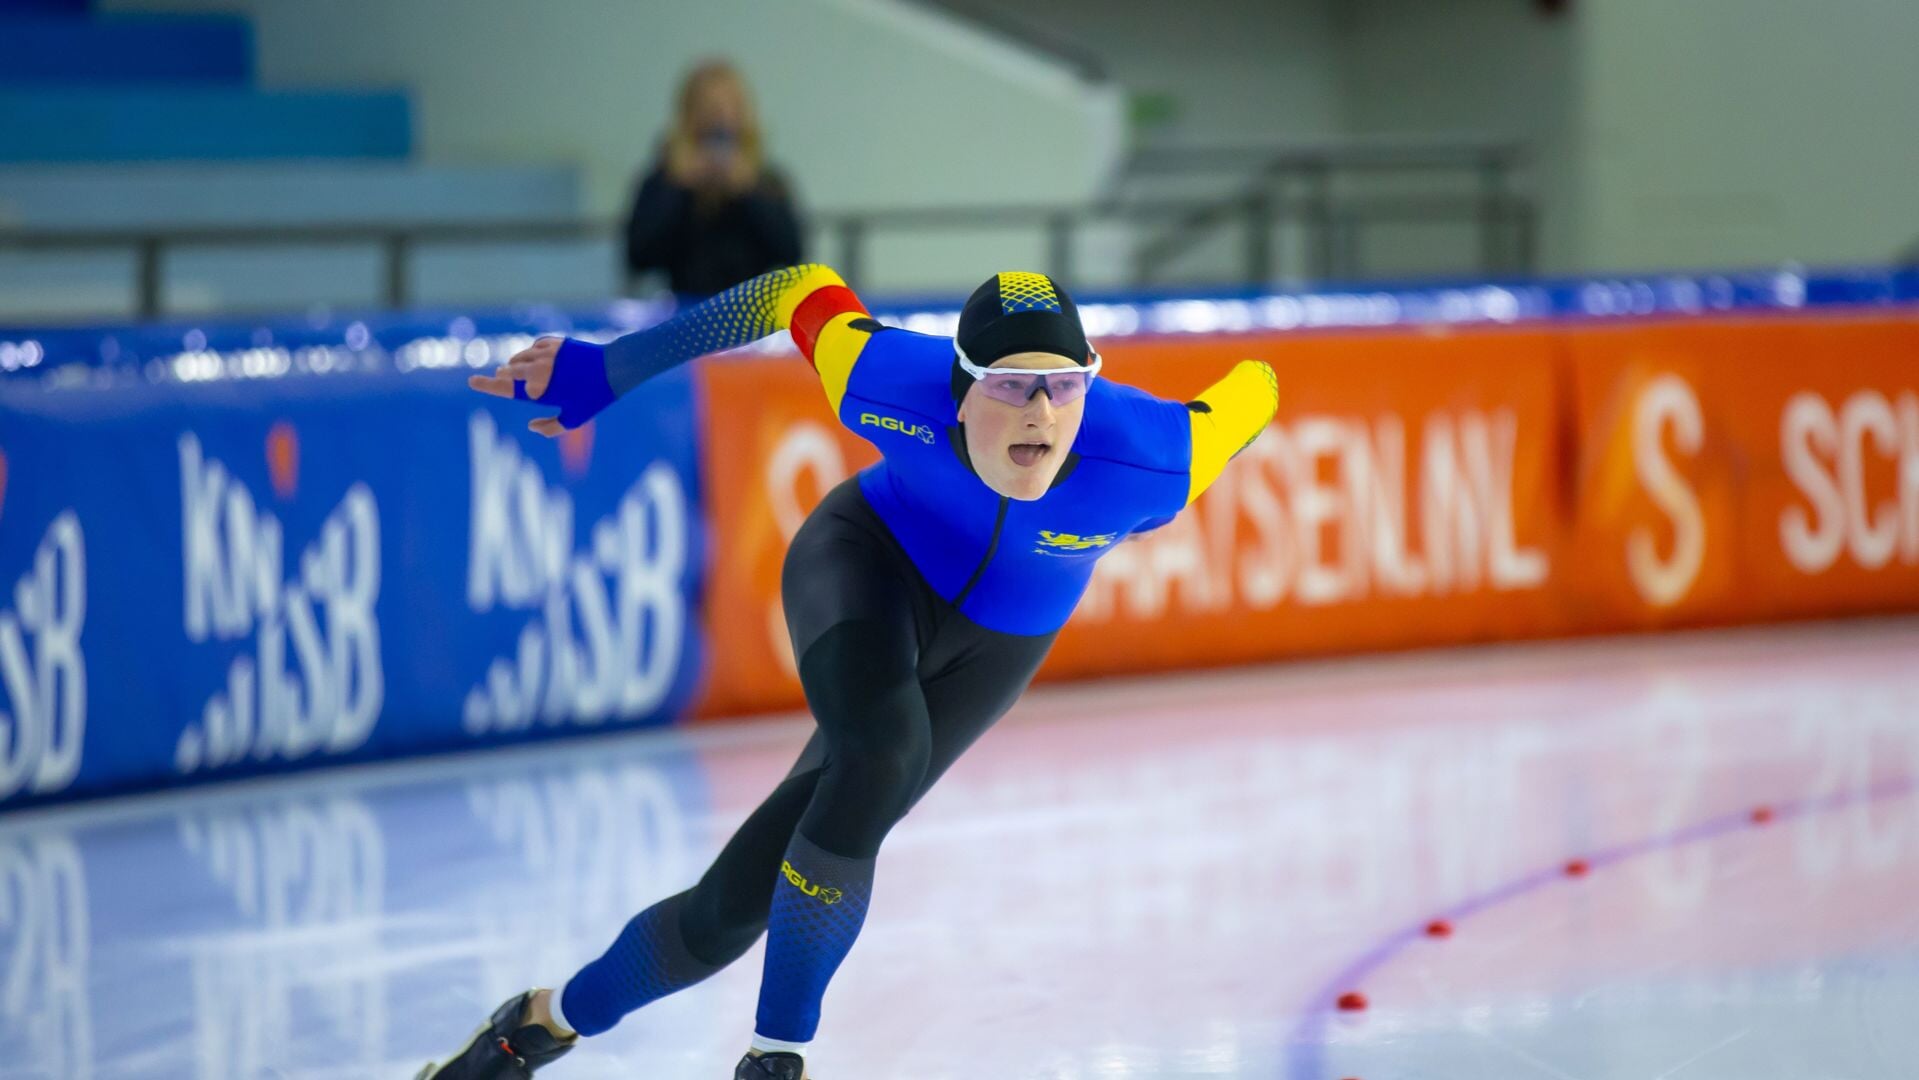 De beste schaatstalenten van Nederland strijden om de nationale titels op ijsbaan De Westfries.